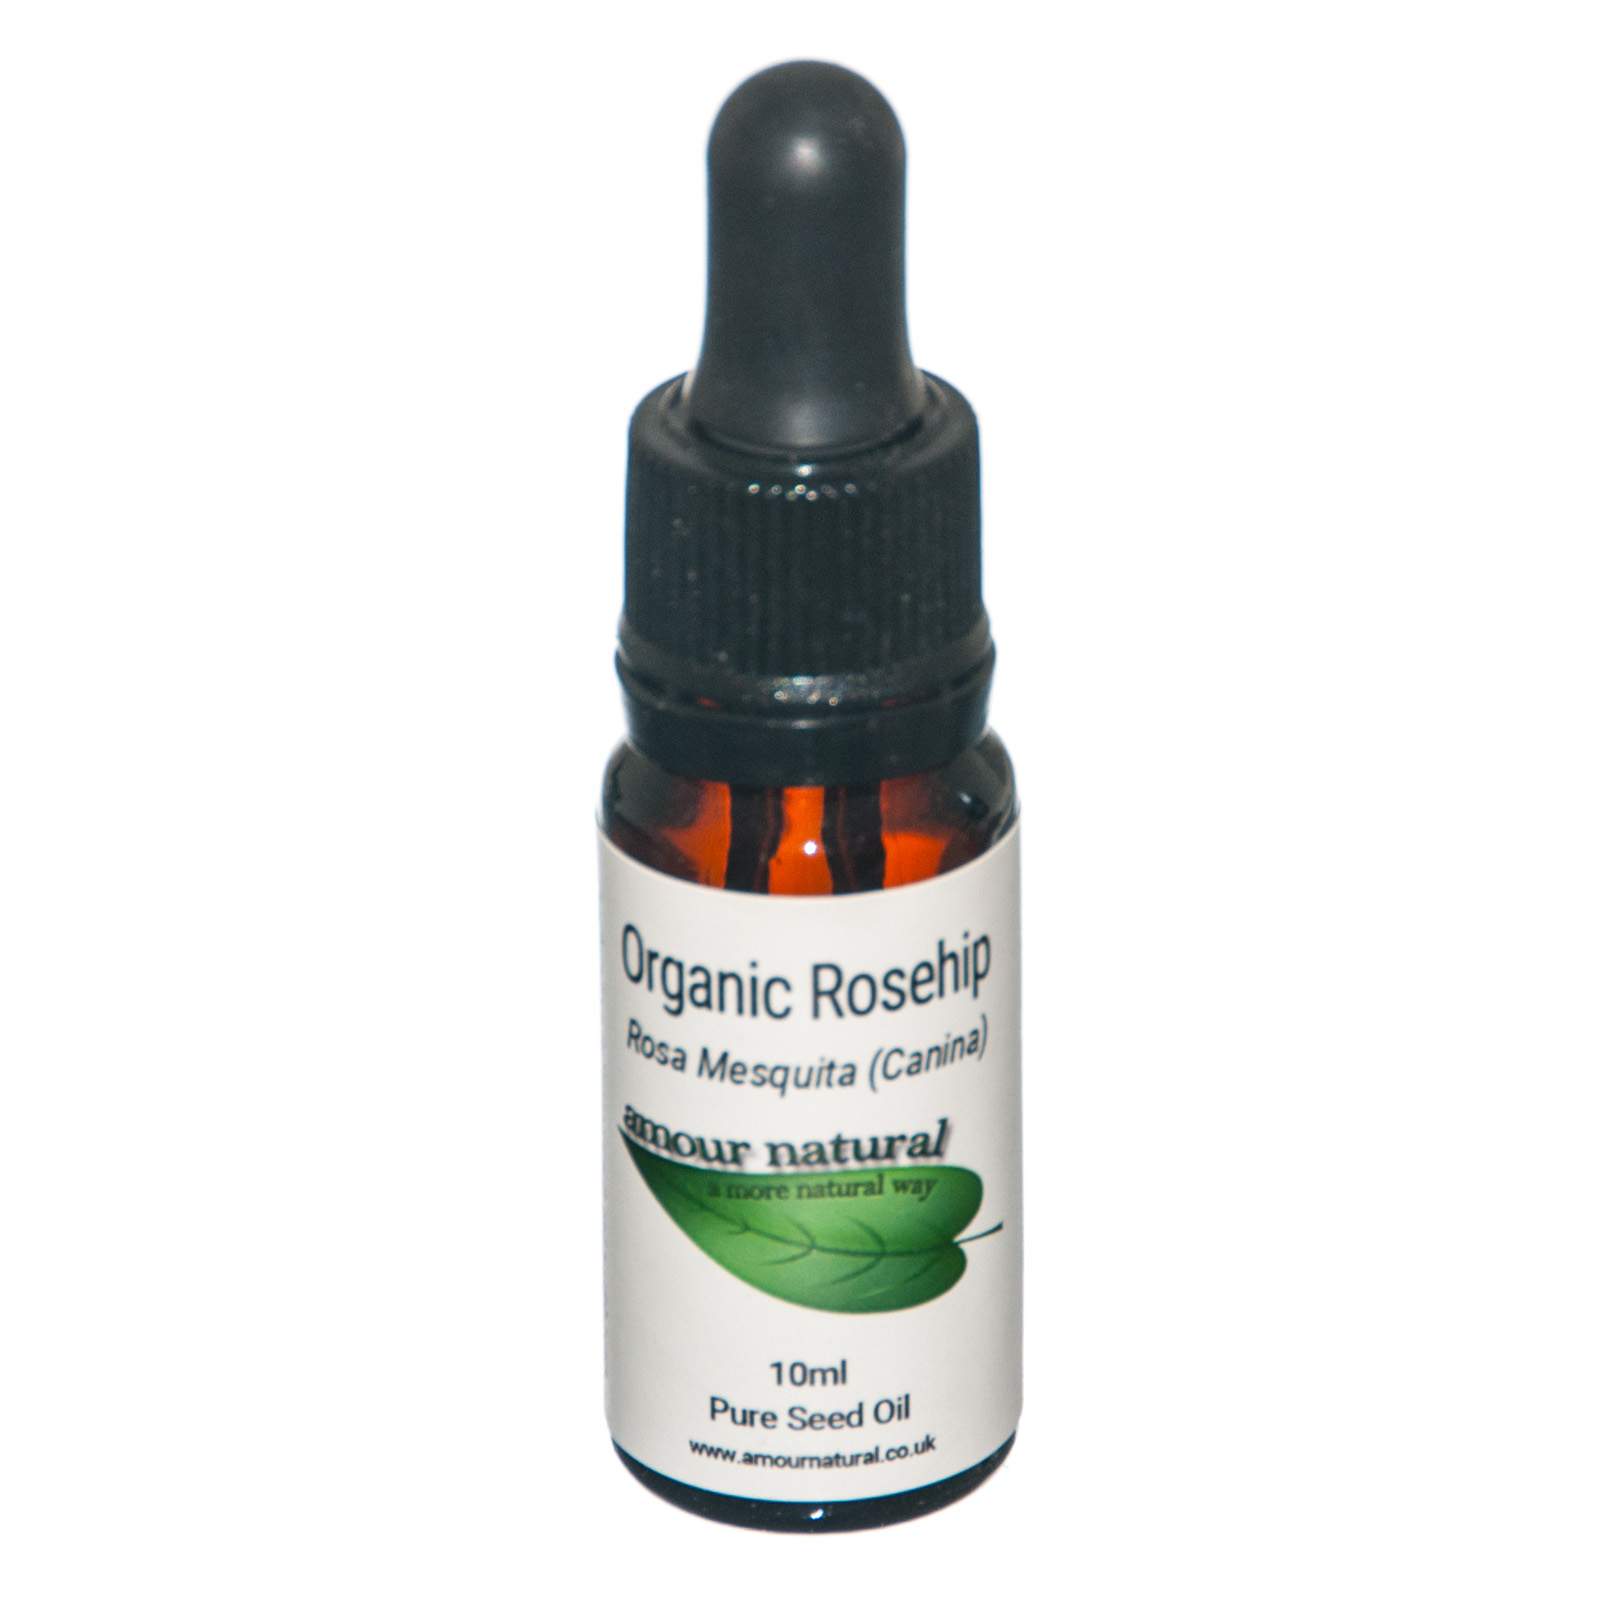 Rosehip seed oil, organic